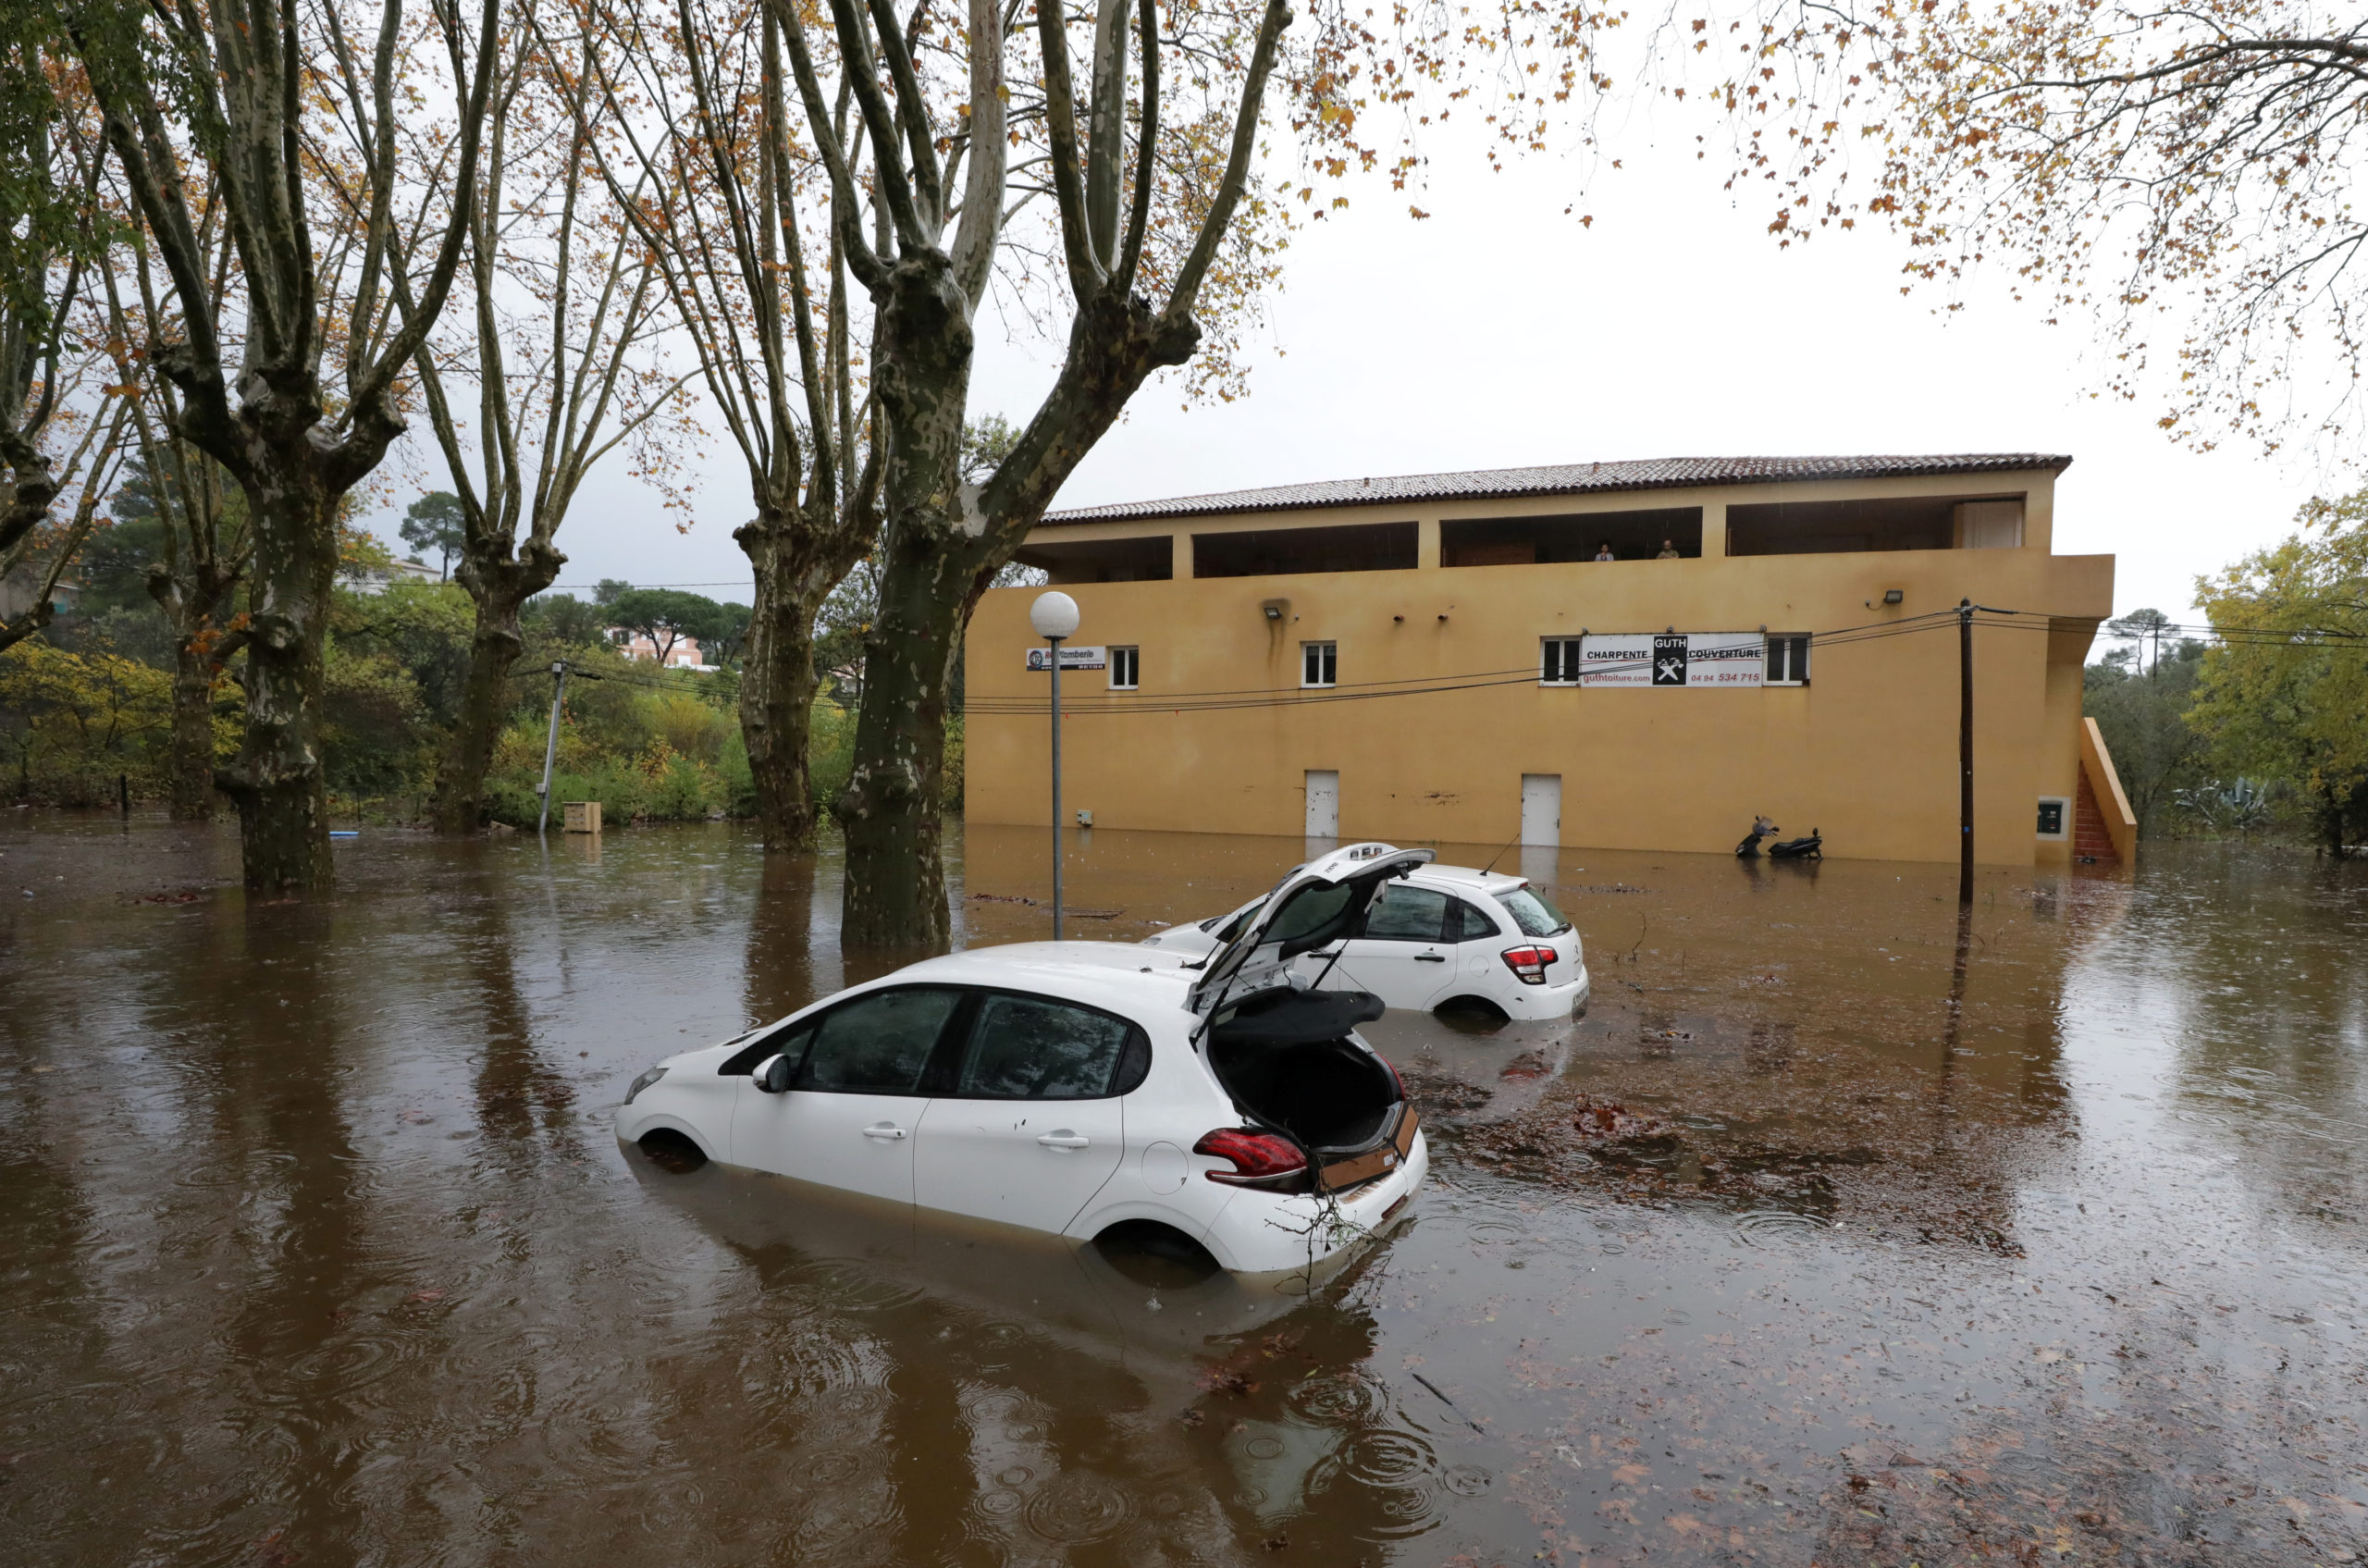 Les inondations provoquées par les fortes pluies qui se sont abattues sur le sud-est de la France ces derniers jours ont fait au moins deux morts dans le Var. /Photo prise le 24 novembre 2019/REUTERS/Eric Gaillard